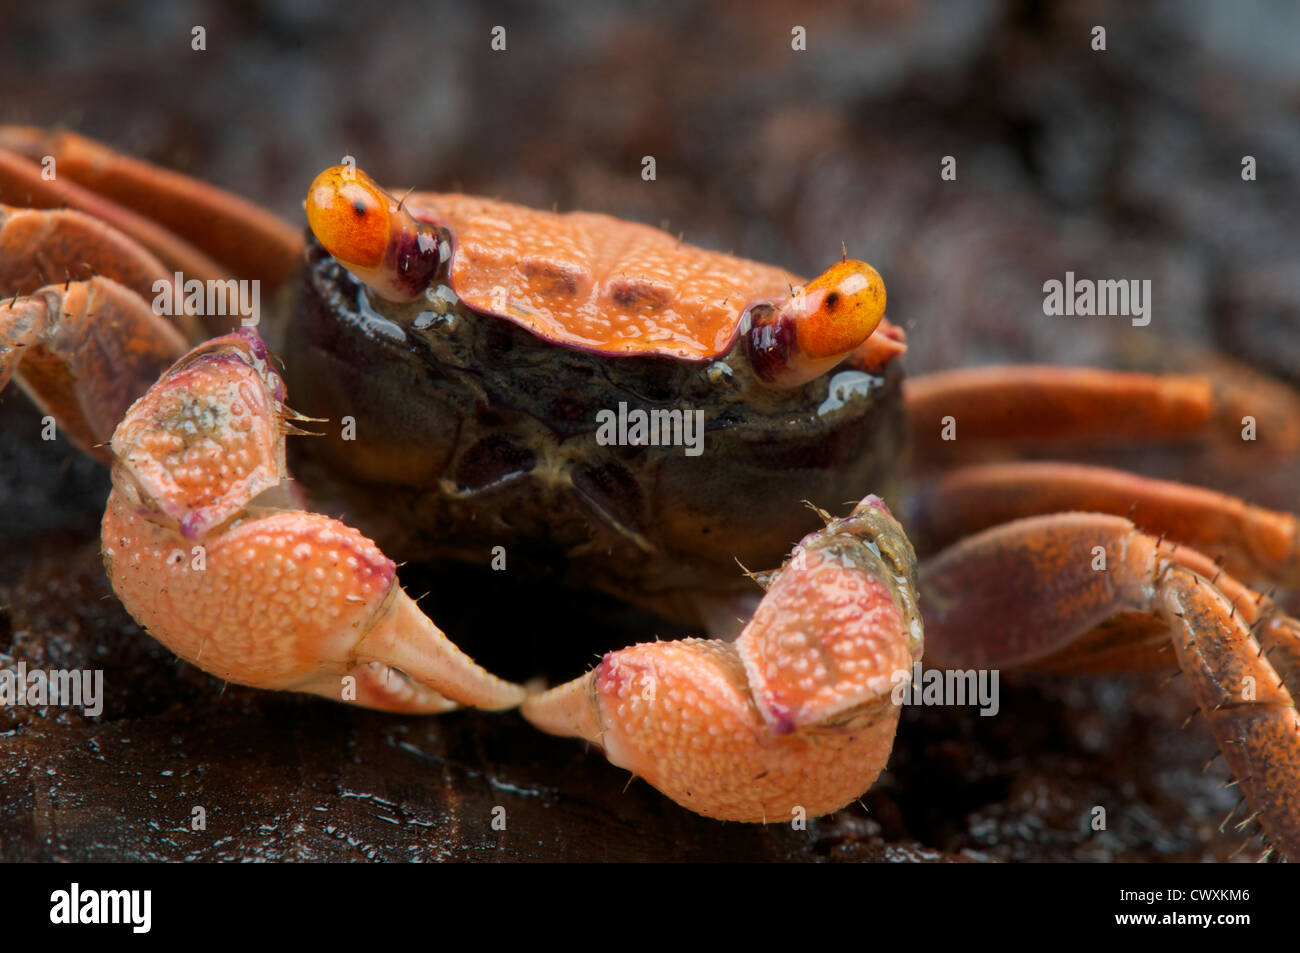 Orange vampire crab / Geosesarma sp. Stock Photo